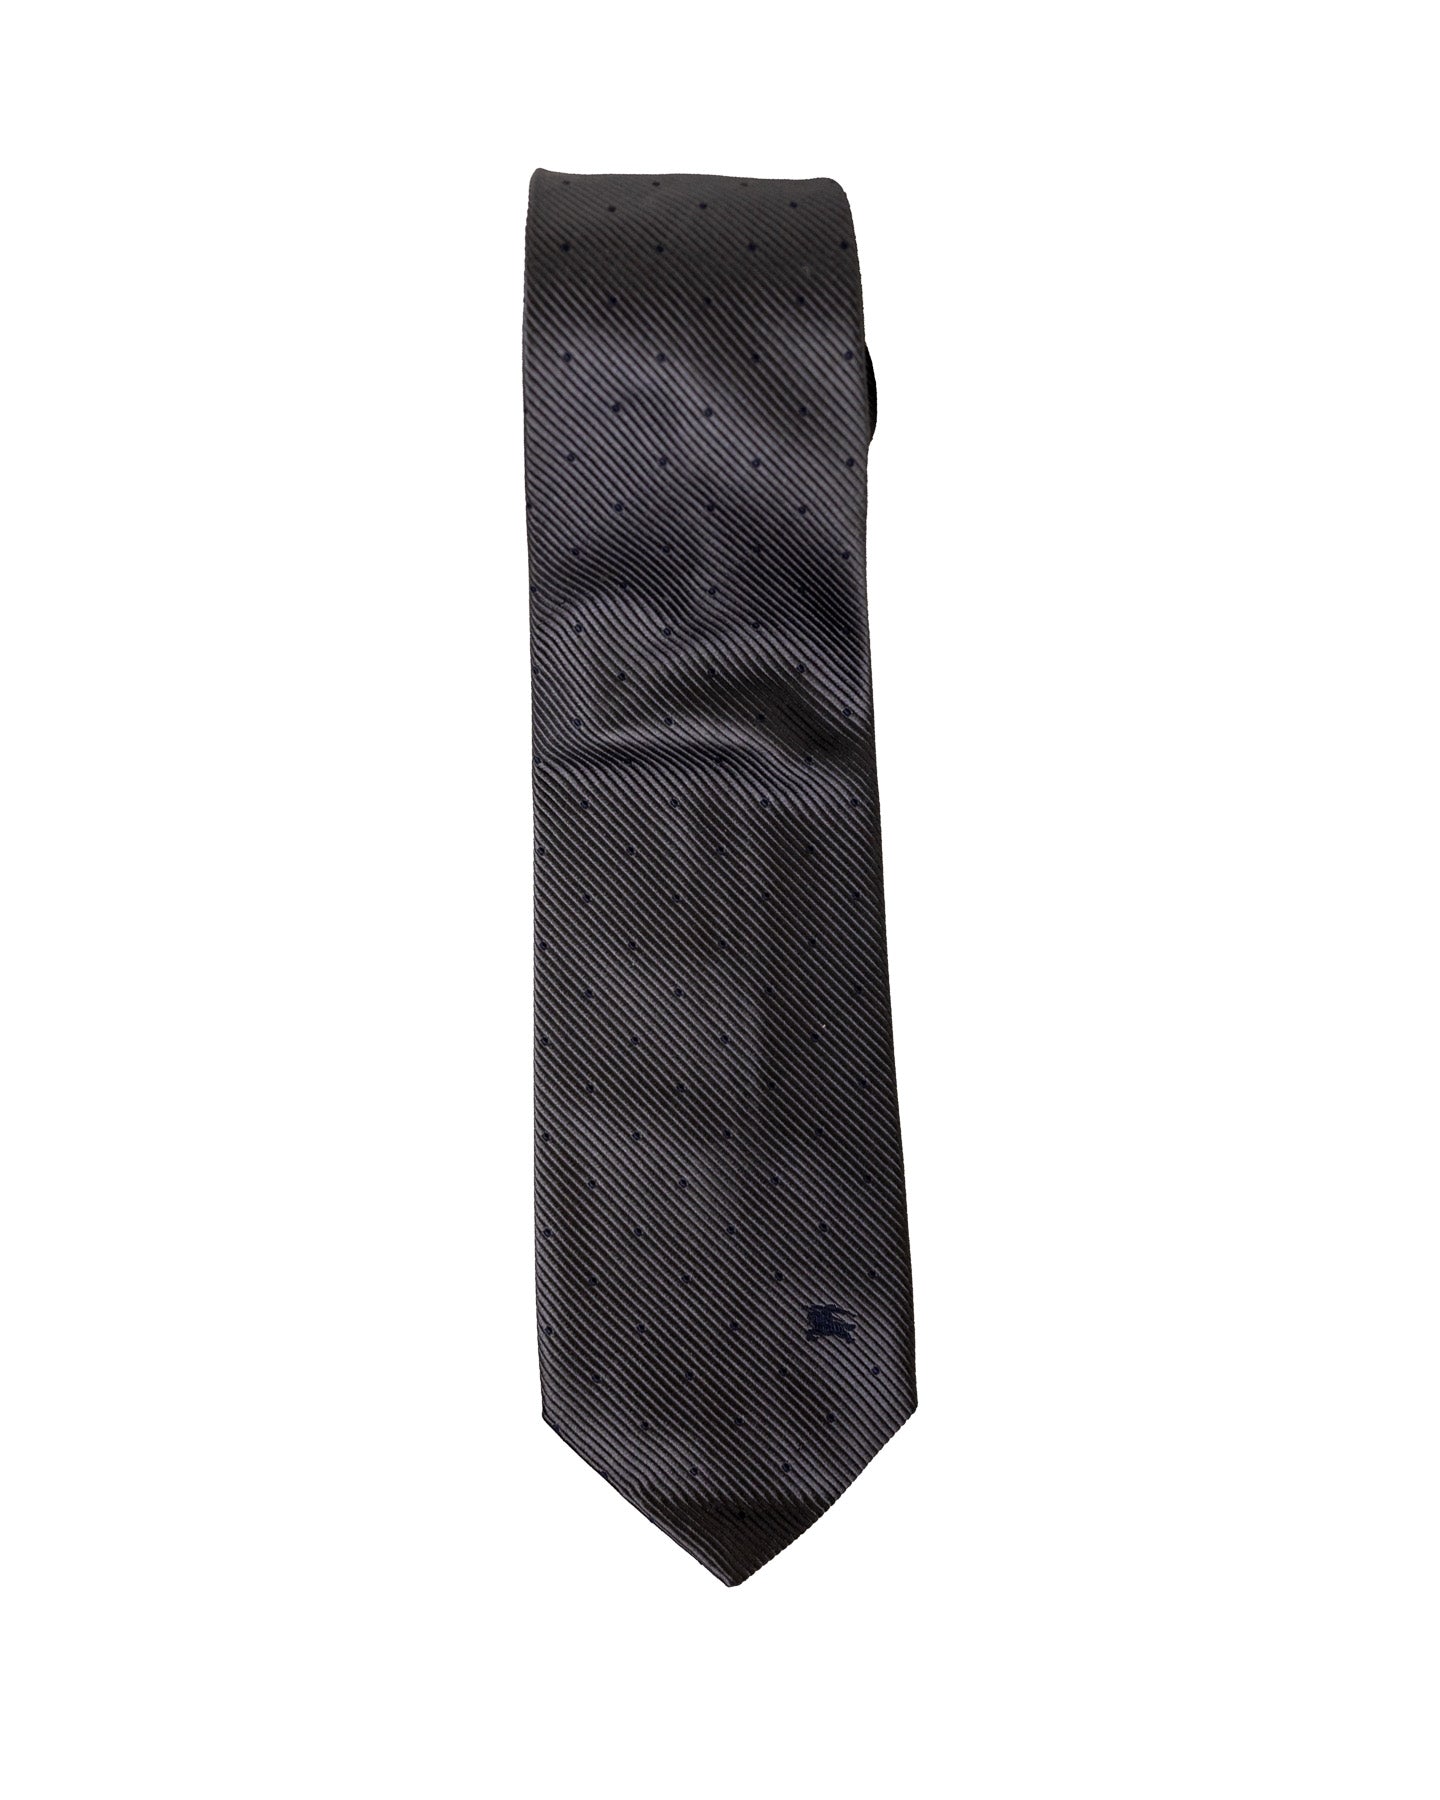 Burberrys Grey Tie With Polka Dots